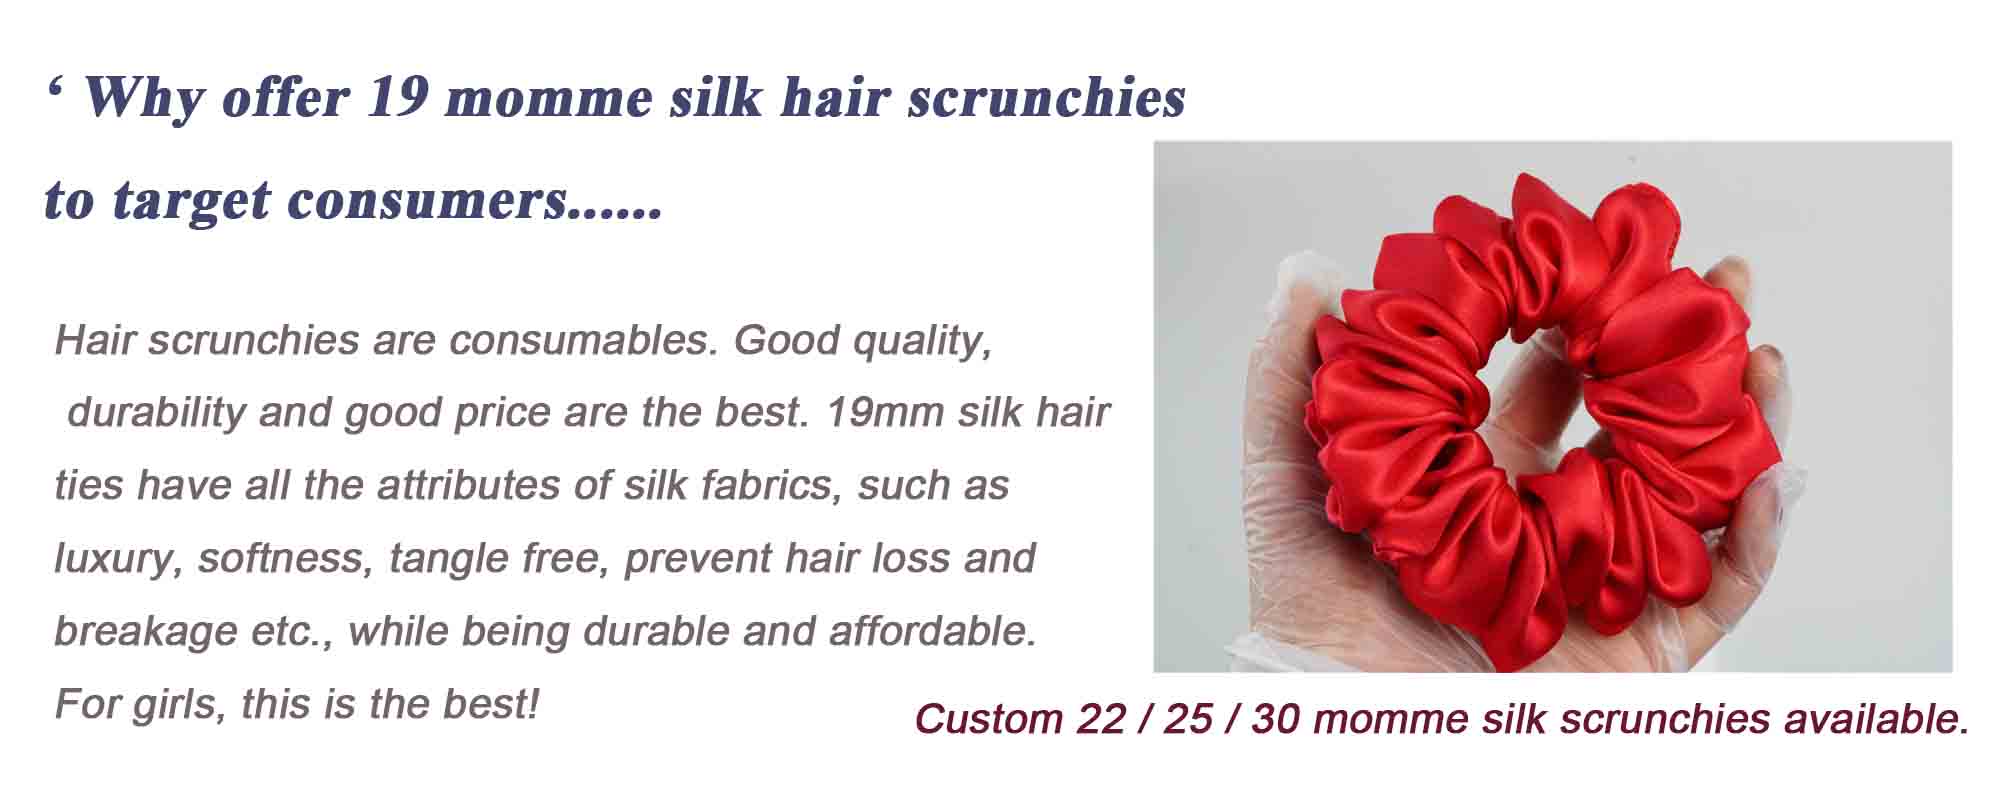 large fluffy silk scrunchies